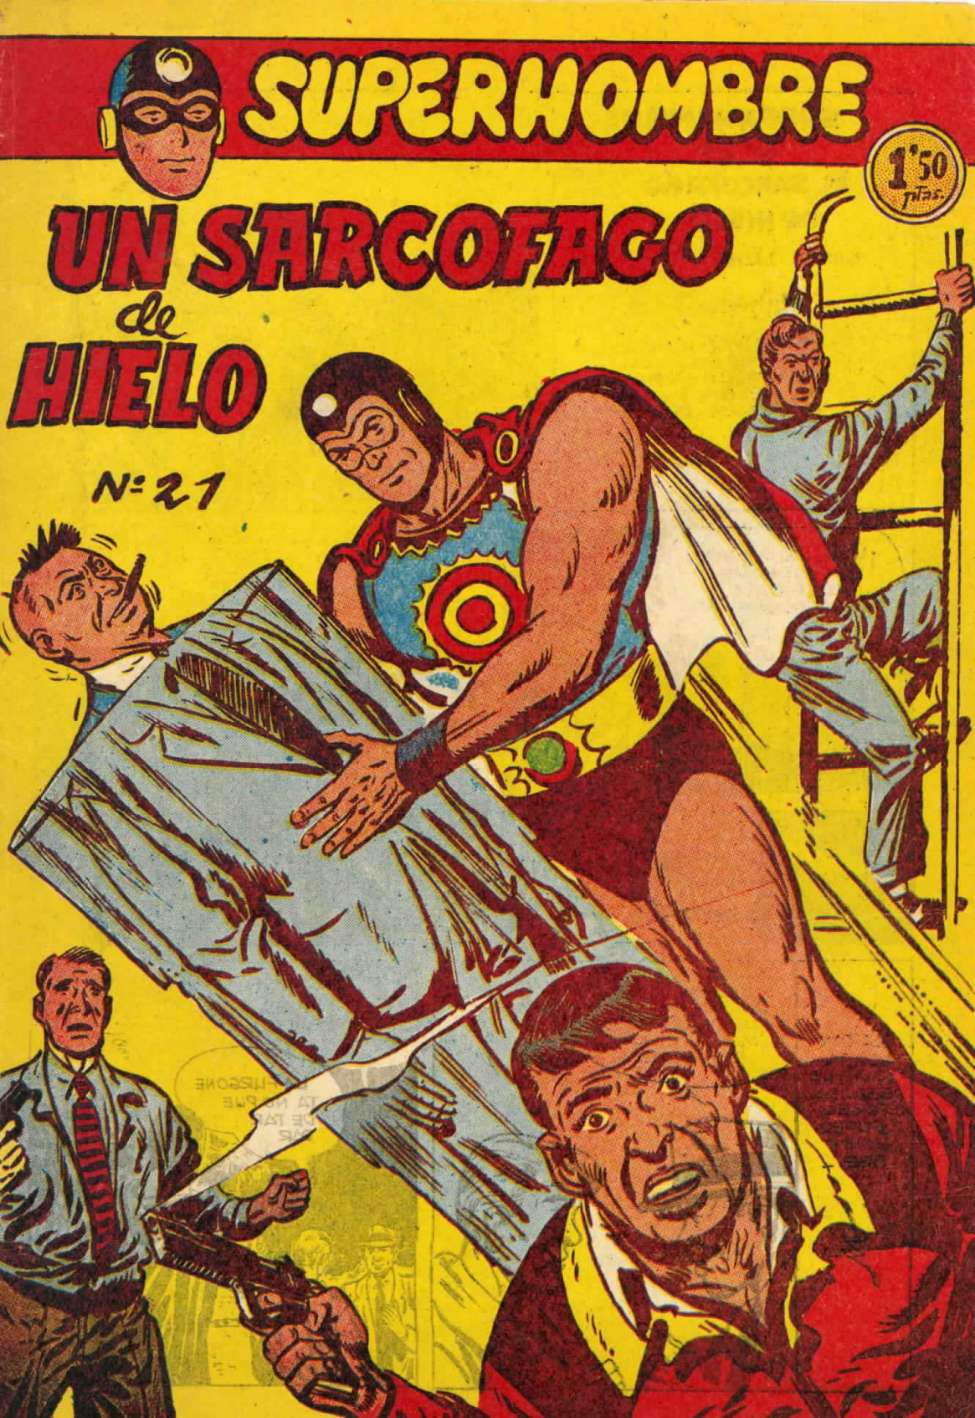 Comic Book Cover For SuperHombre 21 Un sarcofago de hielo